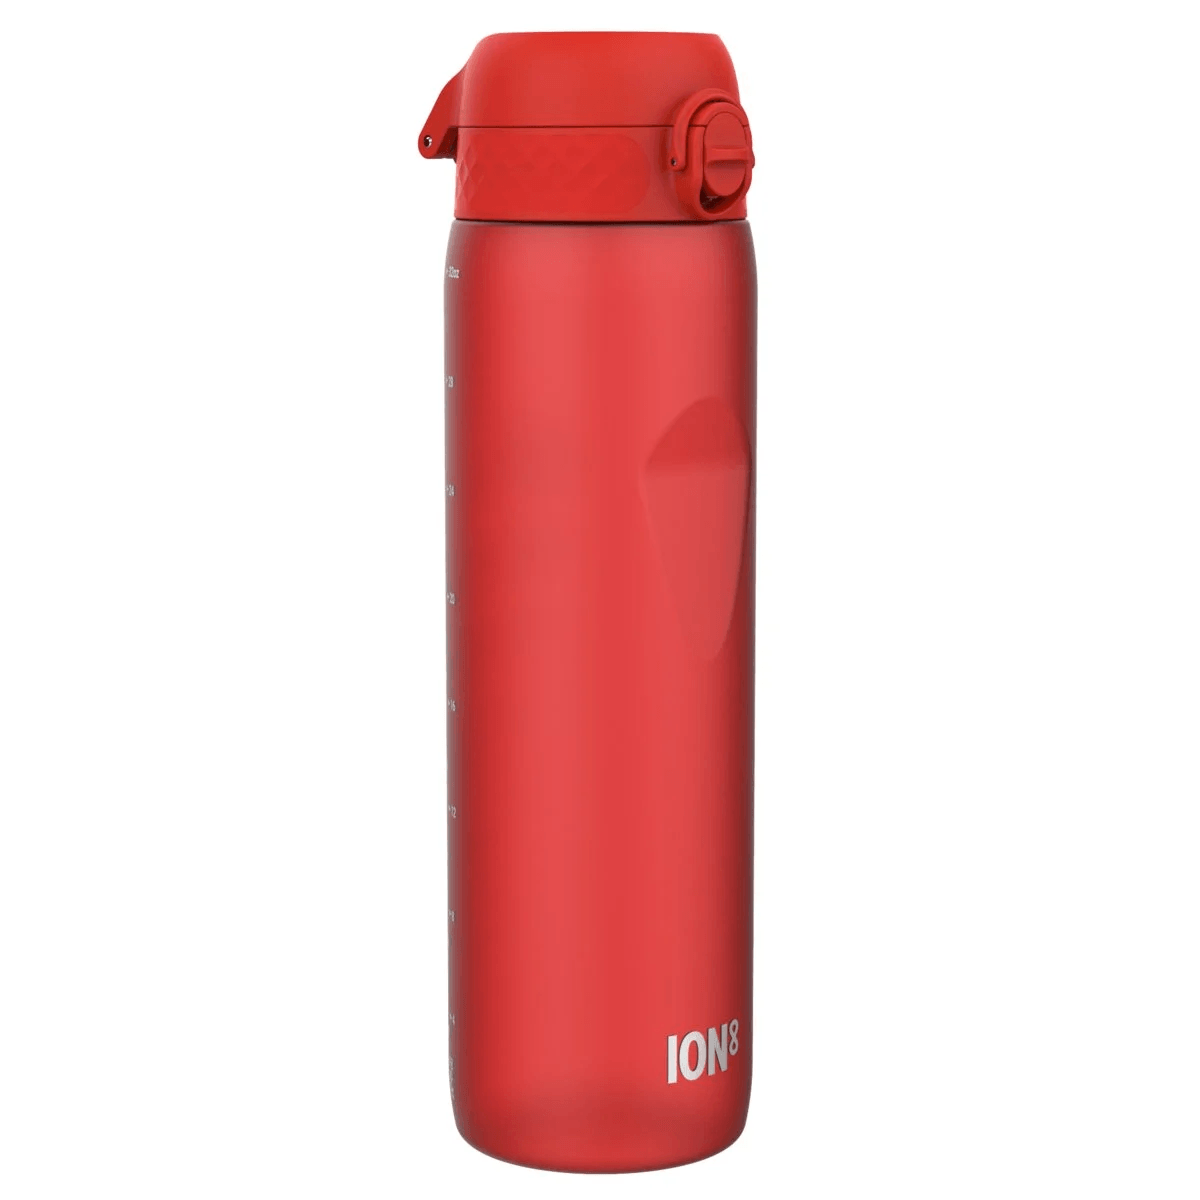 Ion8: garrafa de água vermelha de 1100 ml com copo de medição